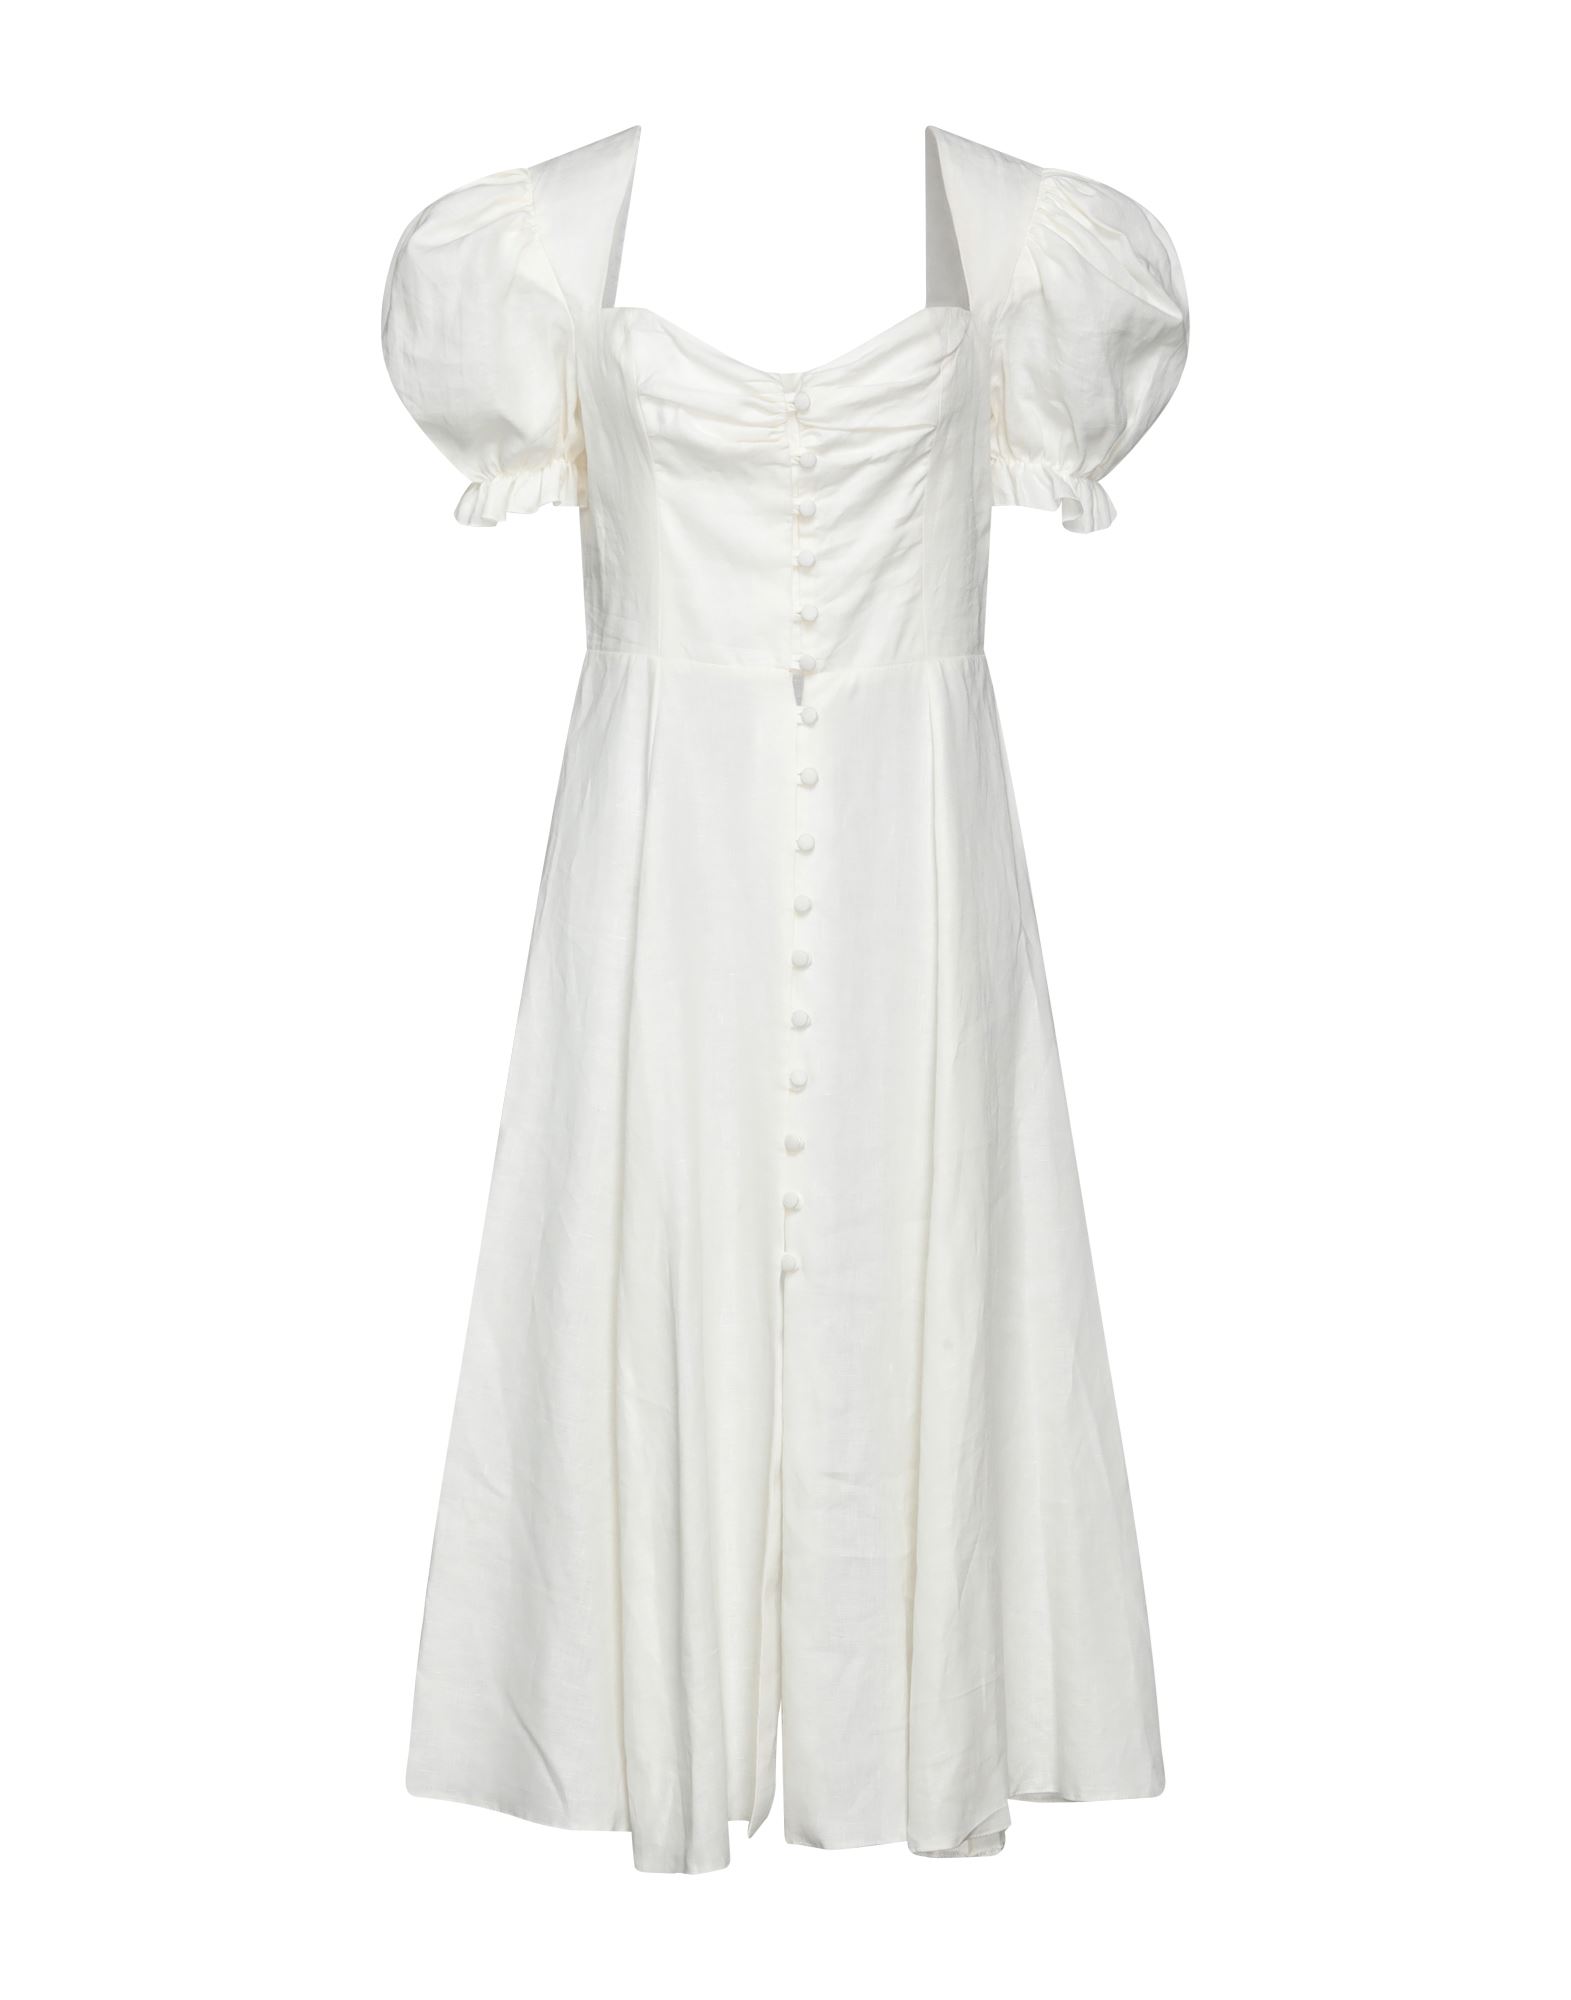 Actualee Midi Dresses In White